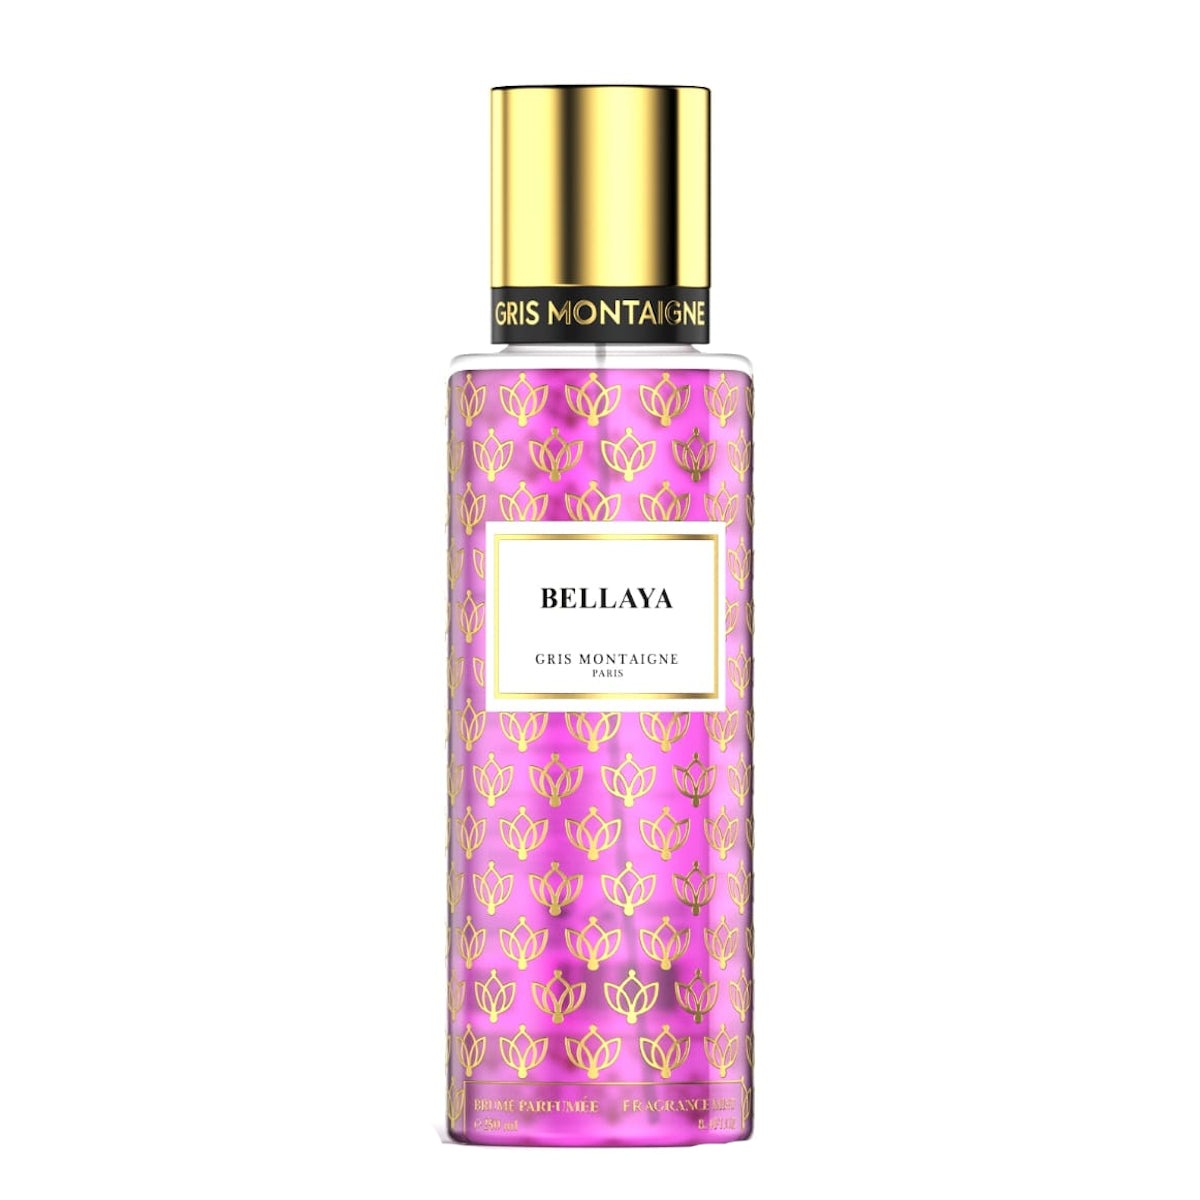 Parfums Bellaya de la marque Gris Montaigne mixte 